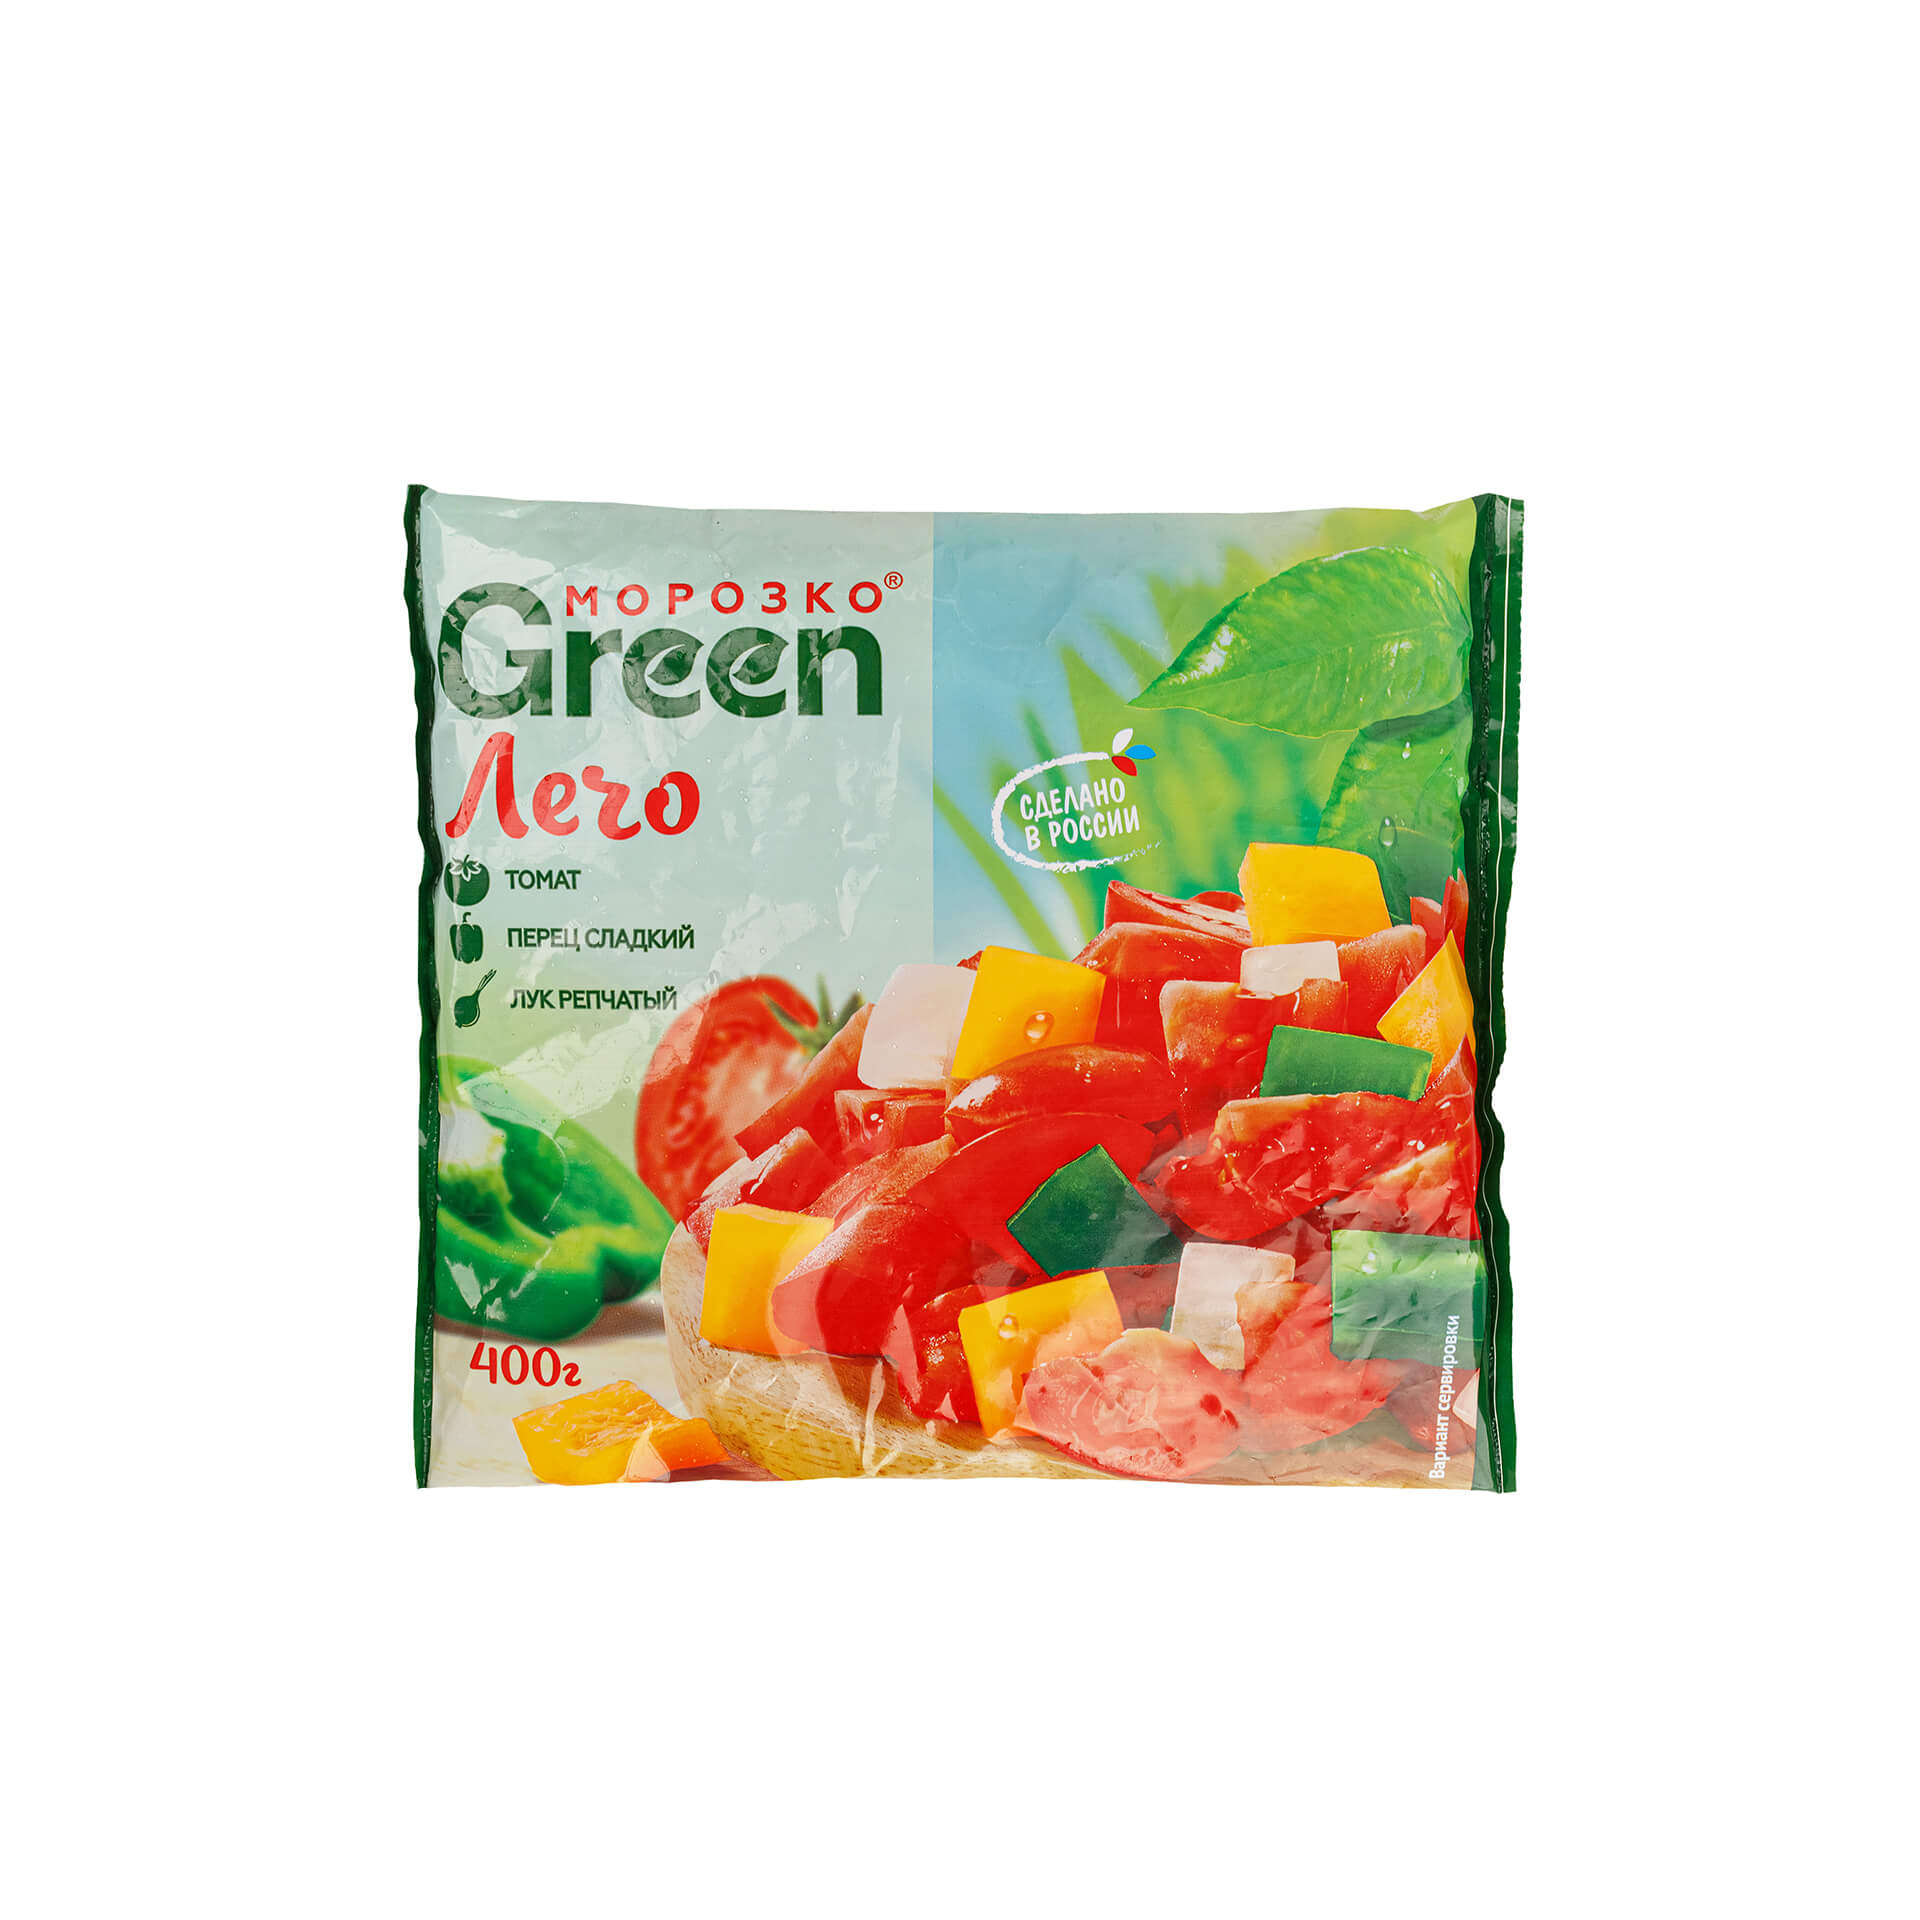 Быстрозамороженная овощная смесь "Лечо" Морозко Green 400 г 8215LED, общий вид, купить оптом с доставкой по москве и московской области, недорого, низкая цена